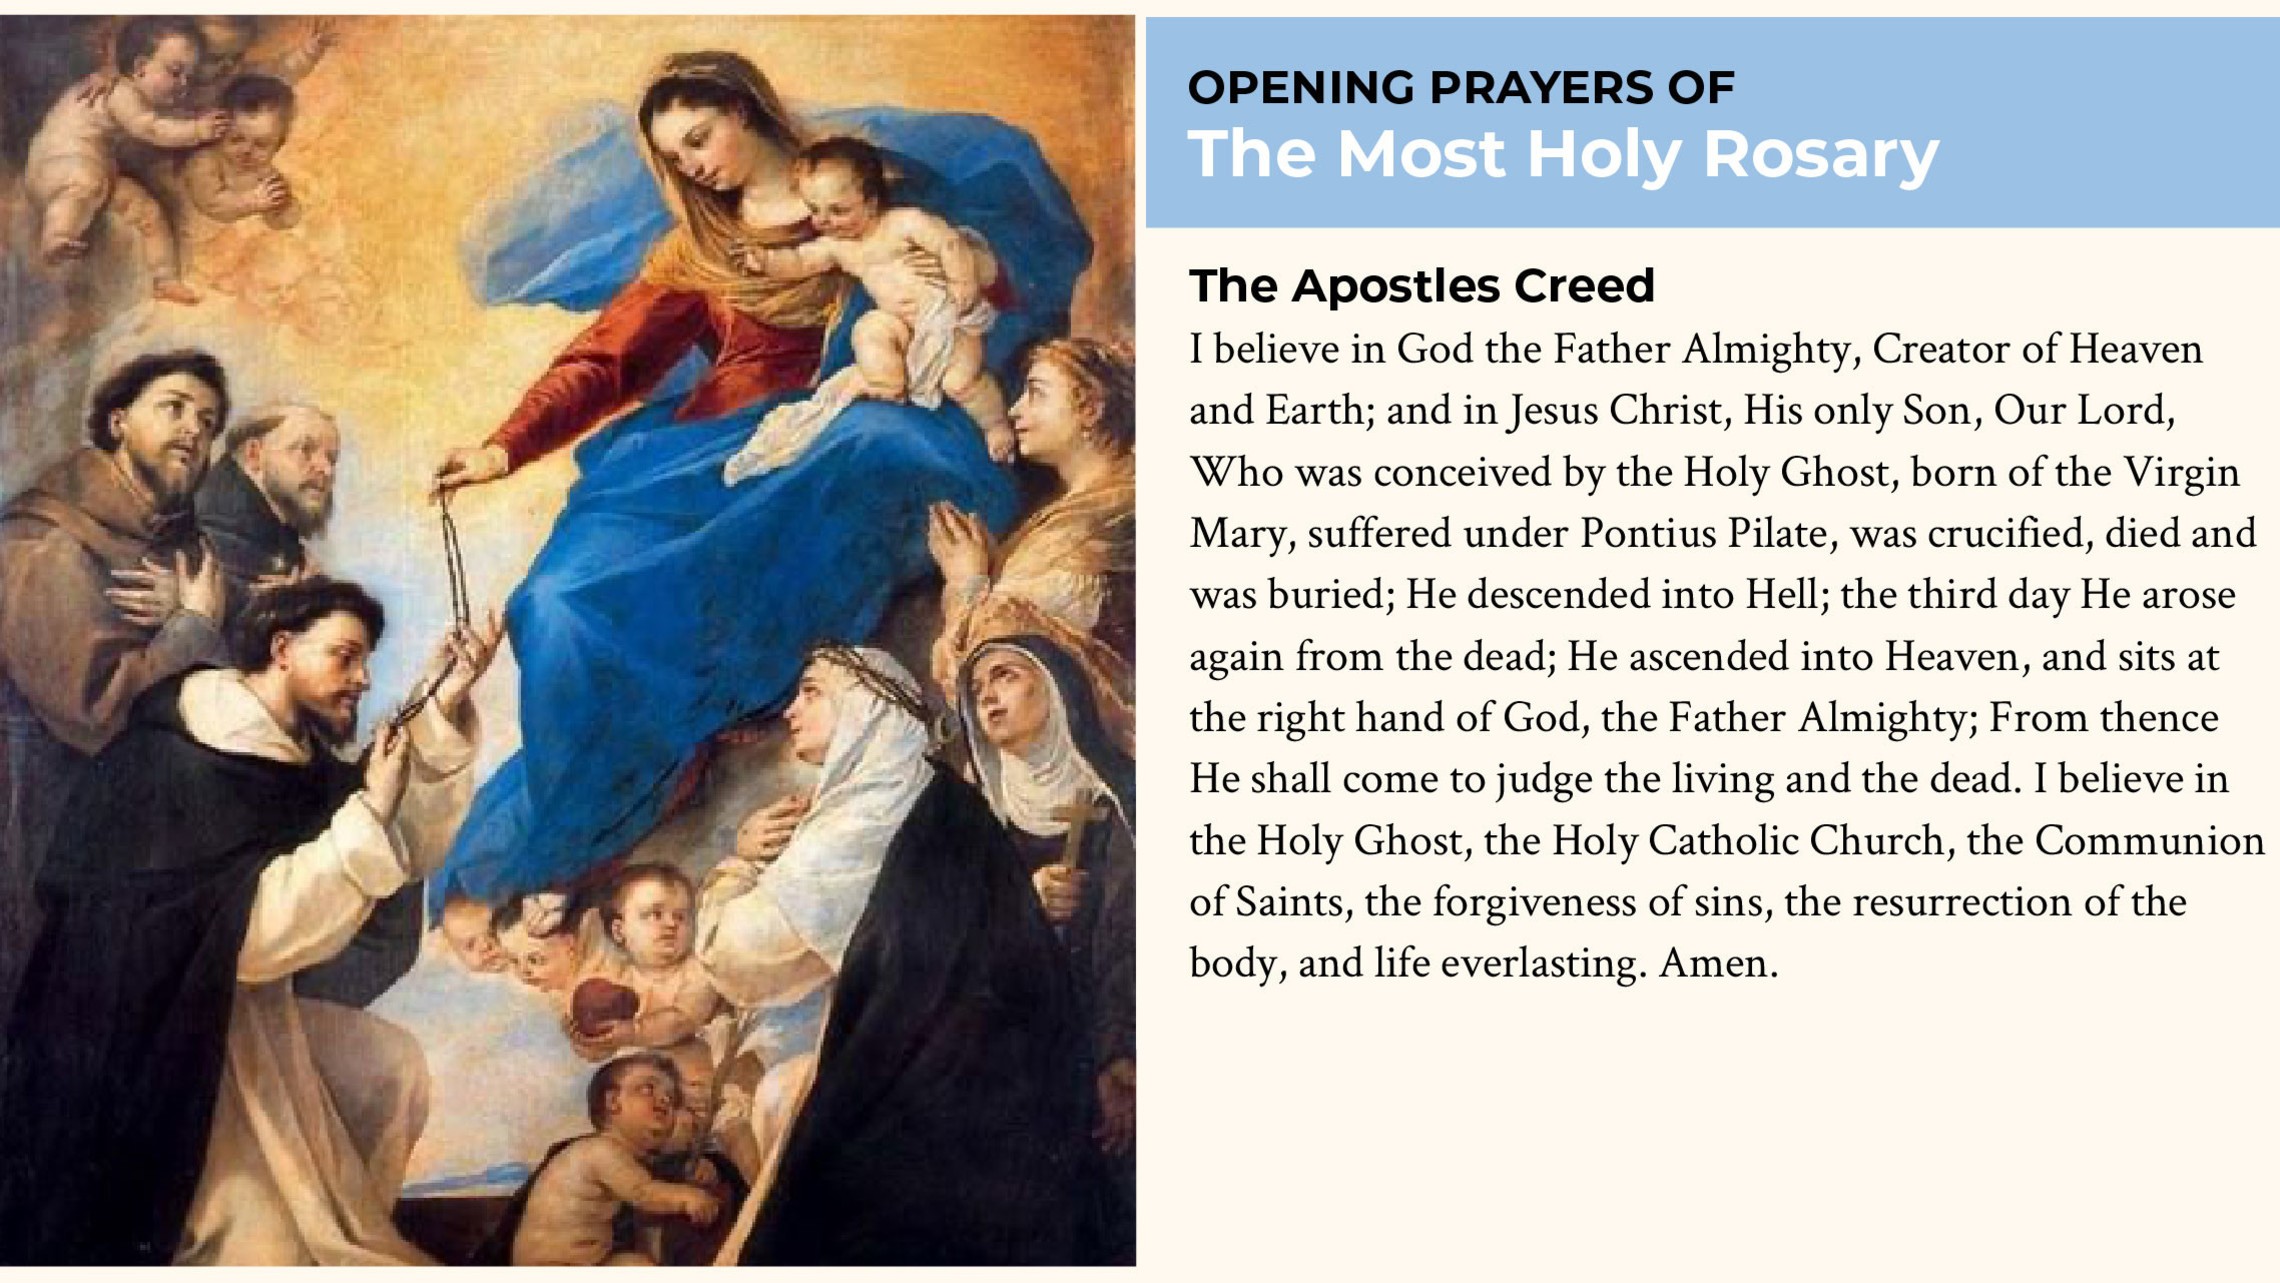 Start by praying the Apostles Creed